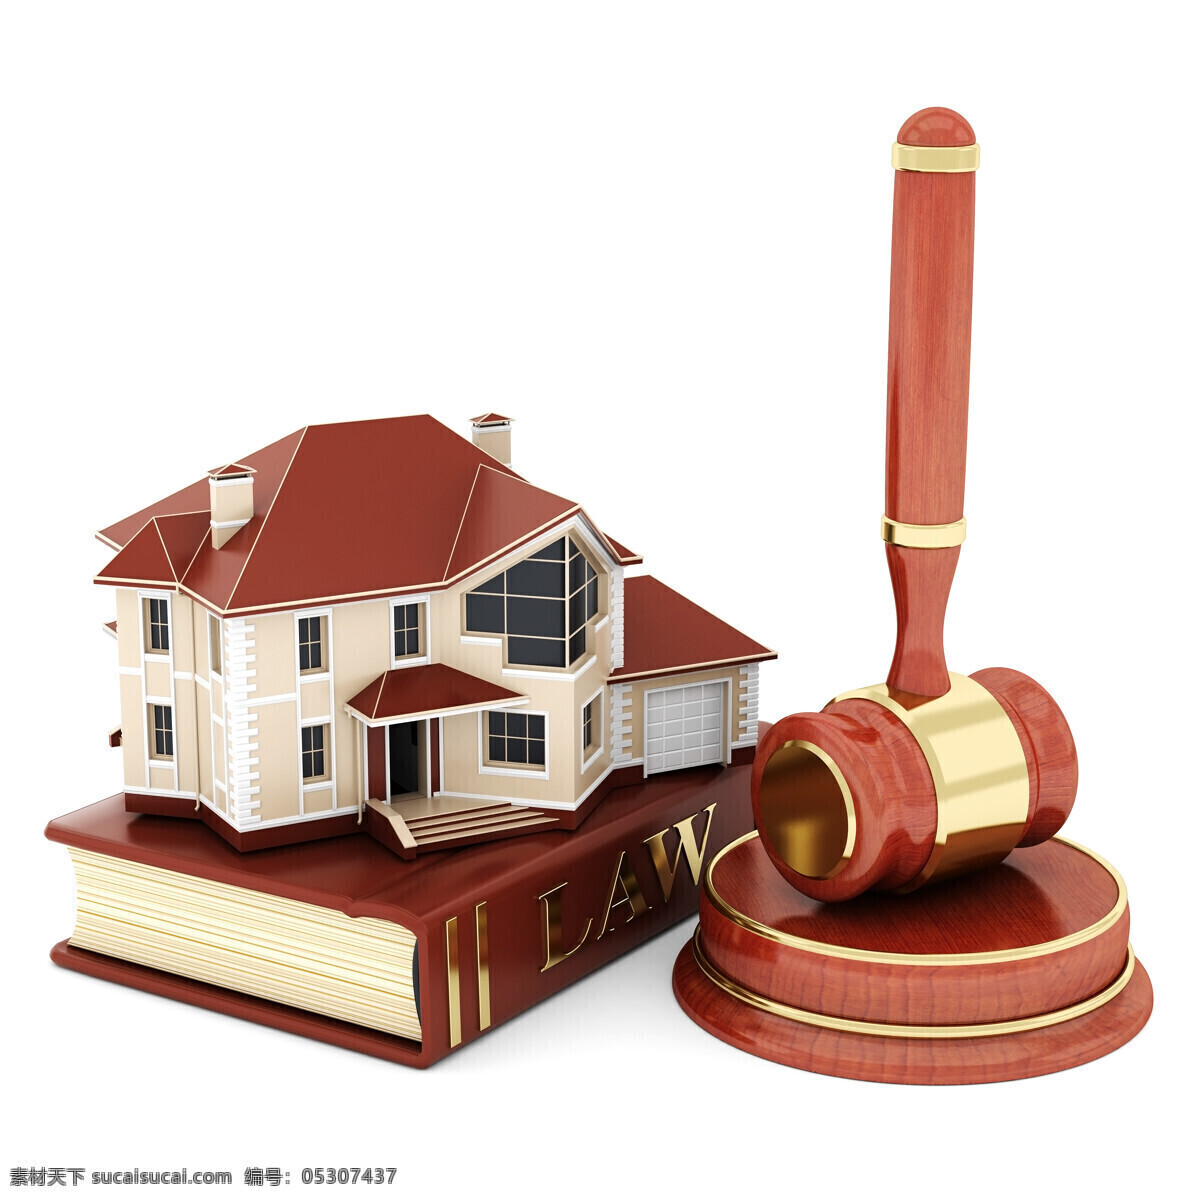 房产 法律 创意设计 别墅模型 法律锤子 法律书本 小木槌 书籍